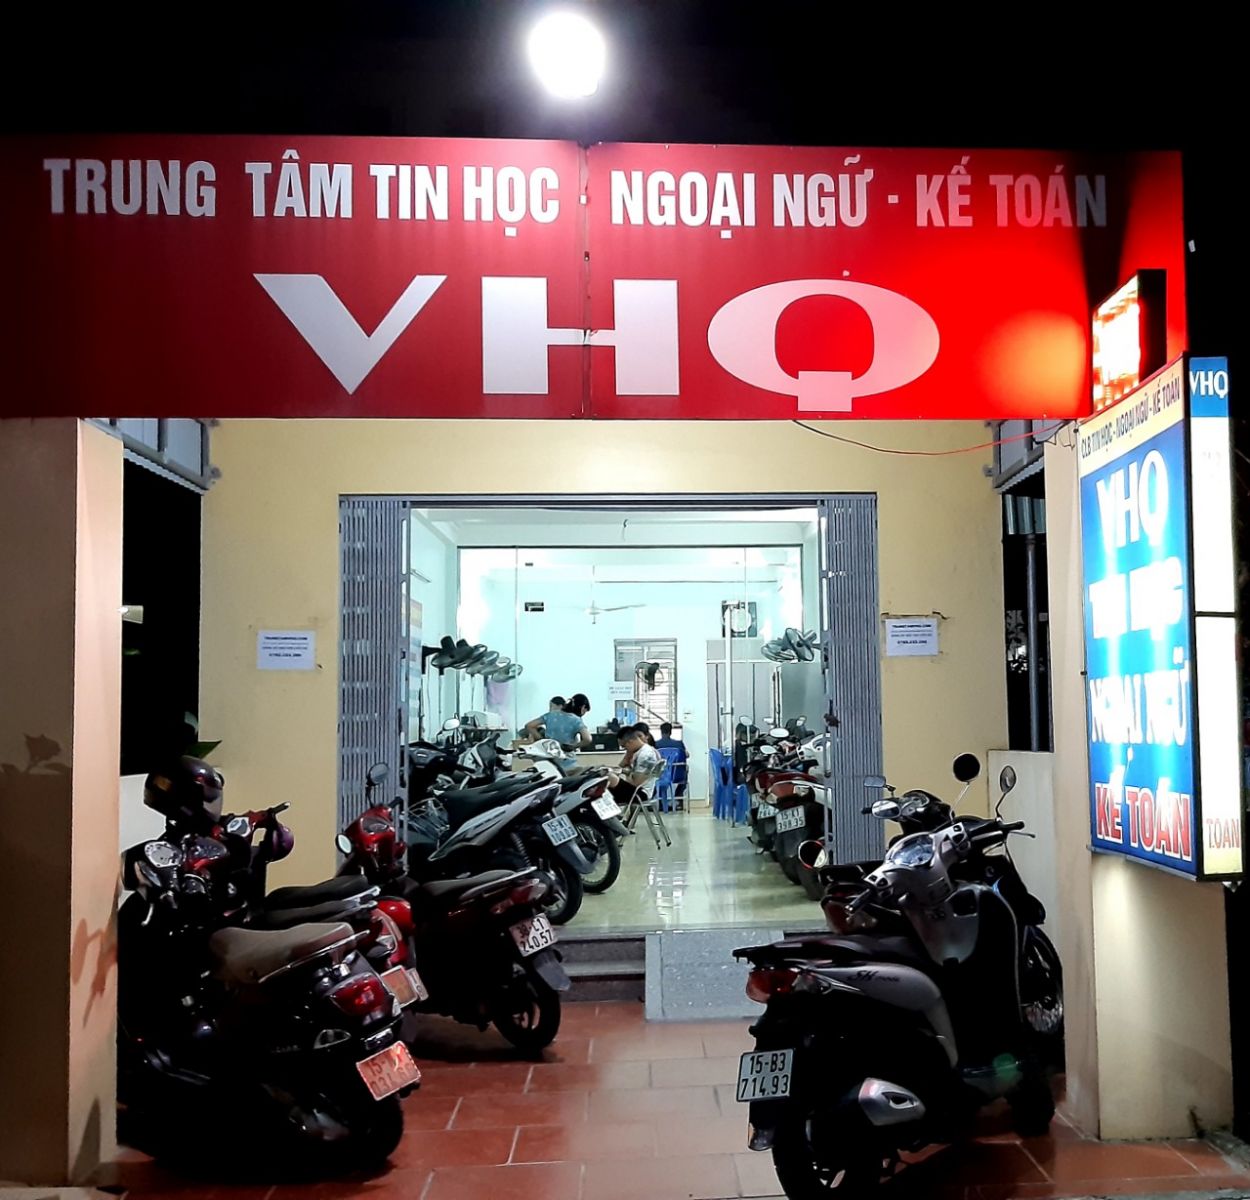 Trung tâm dạy tin học tại Ninh Giang Hải Dương đang tuyển sinh